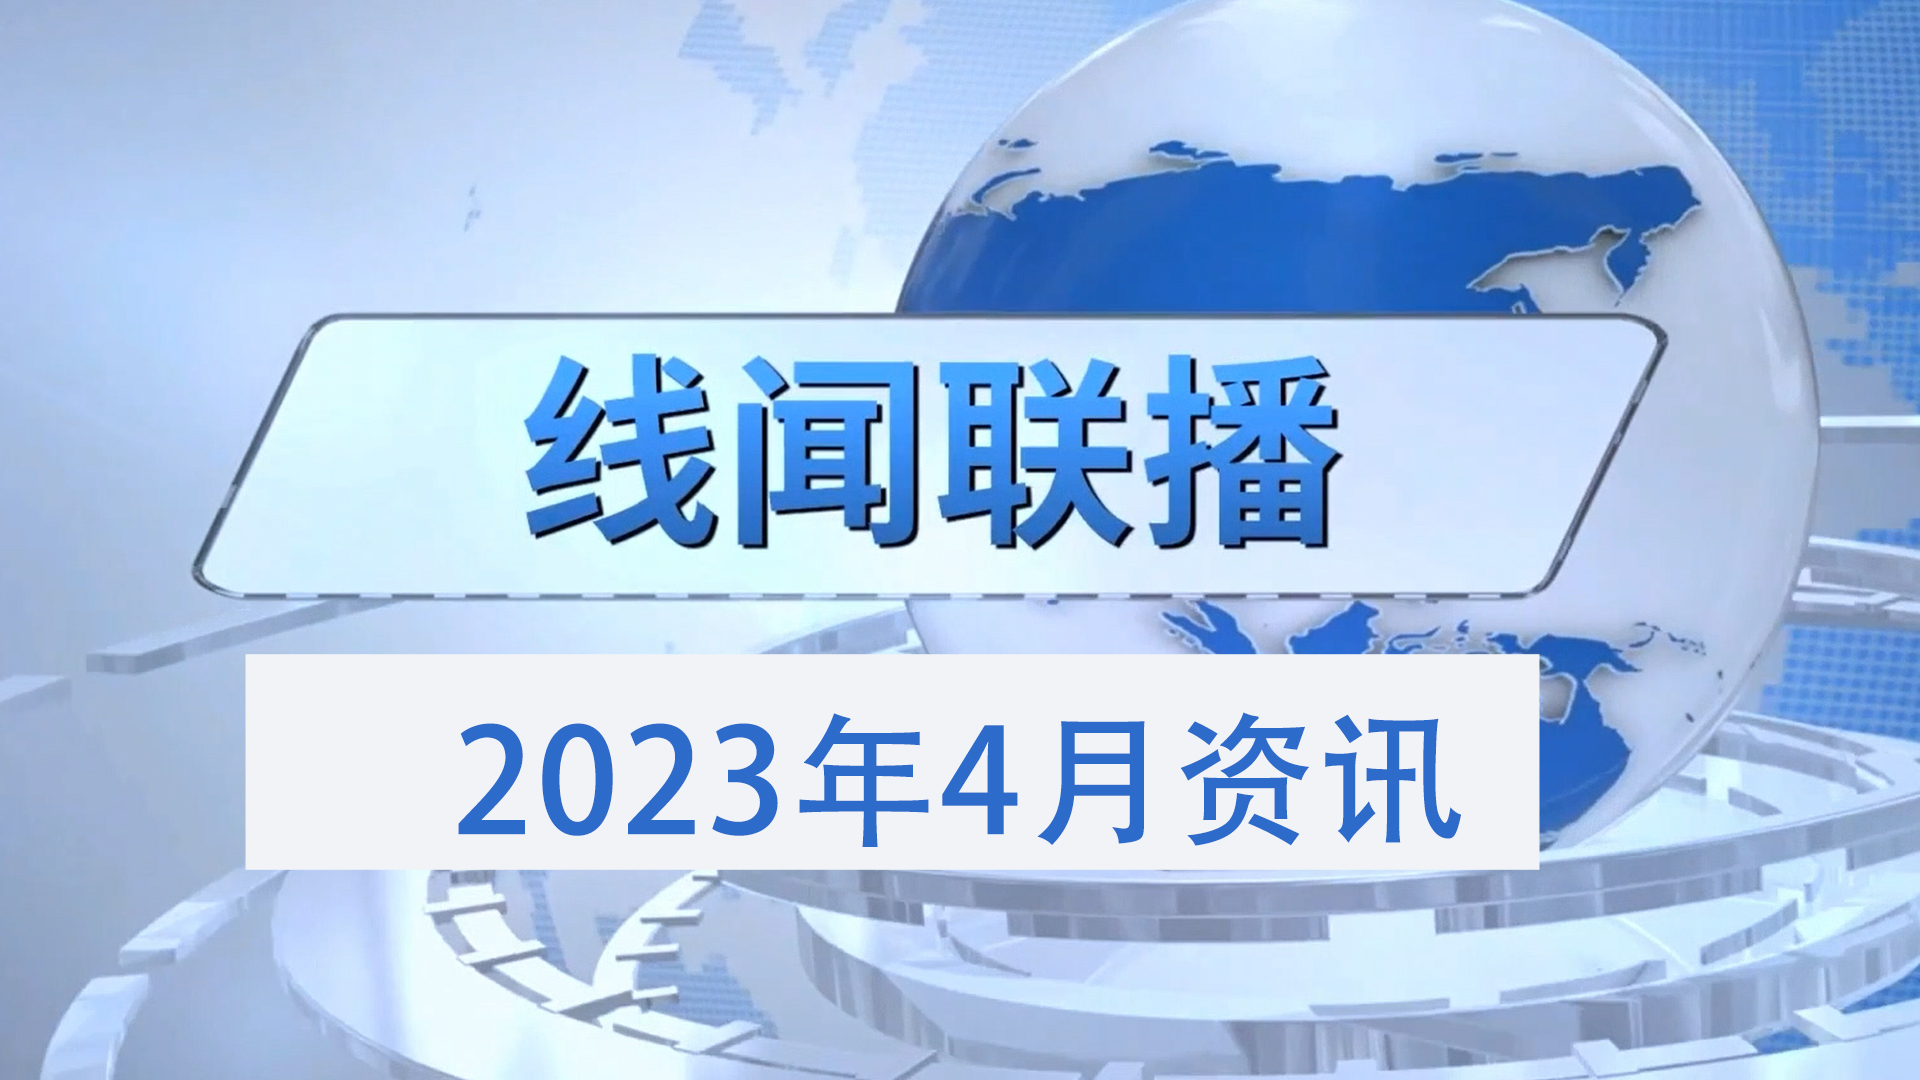 2023年4月份线闻联播，带您了解线束行业最新资讯 